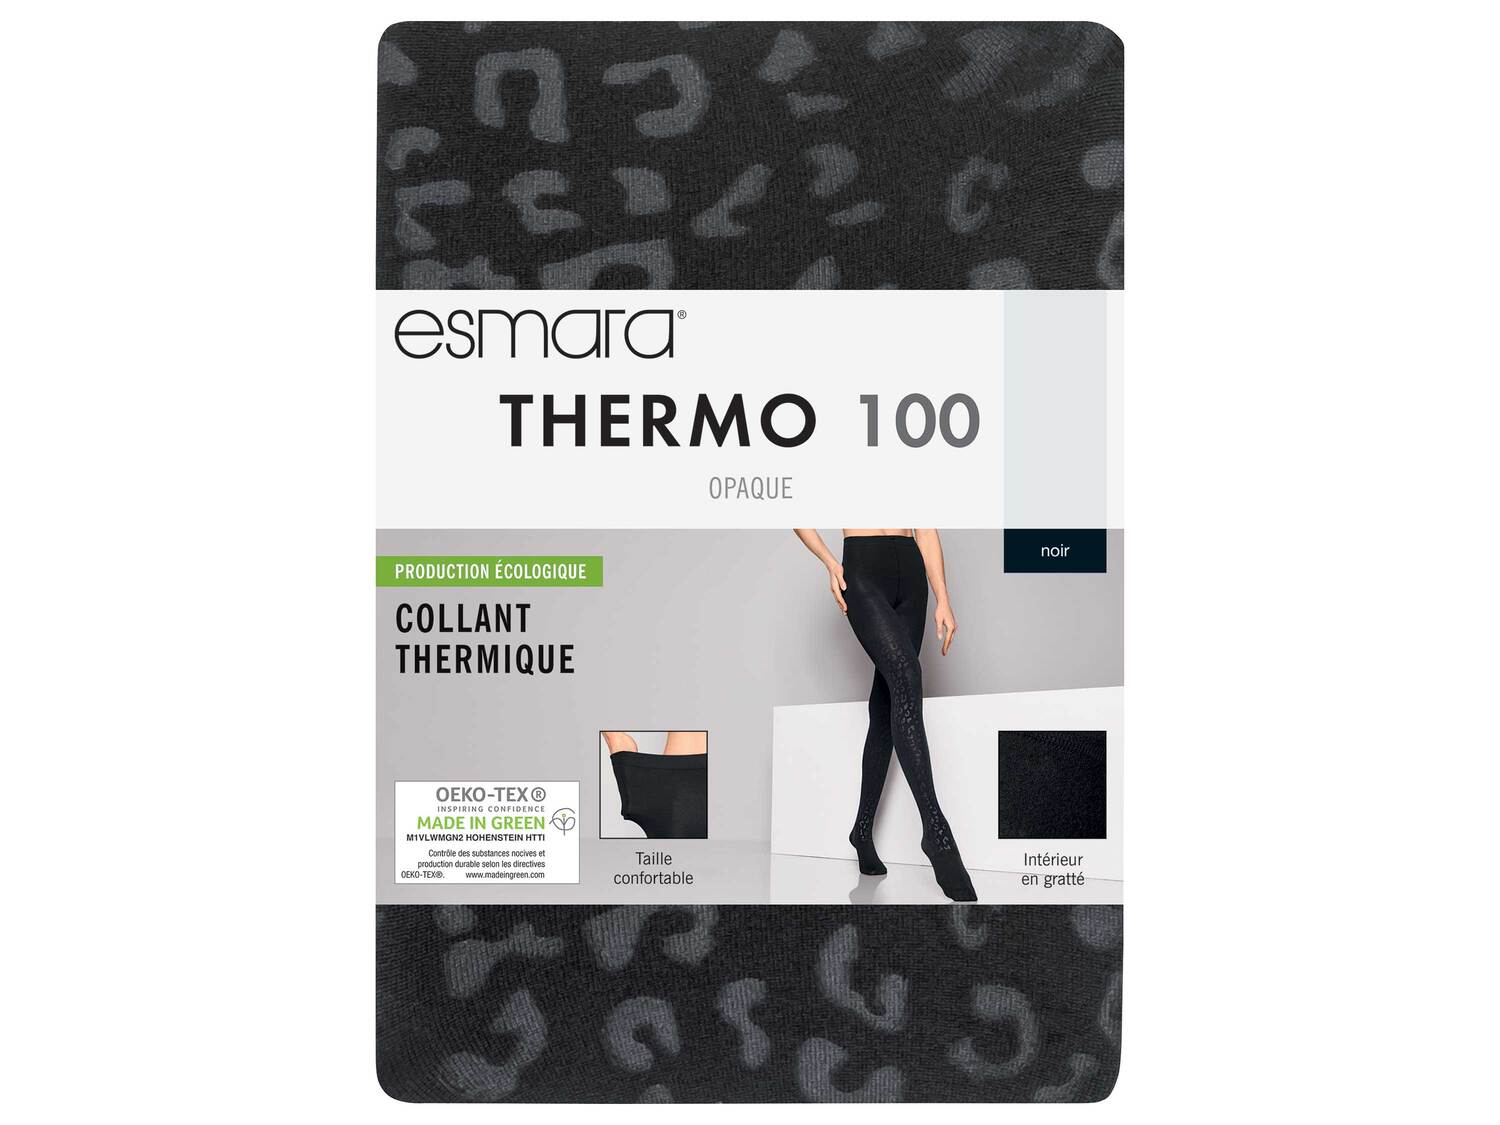 Collant ou legging thermique , le prix 3.99 € 
- Du M au XXL selon modèle
- ...